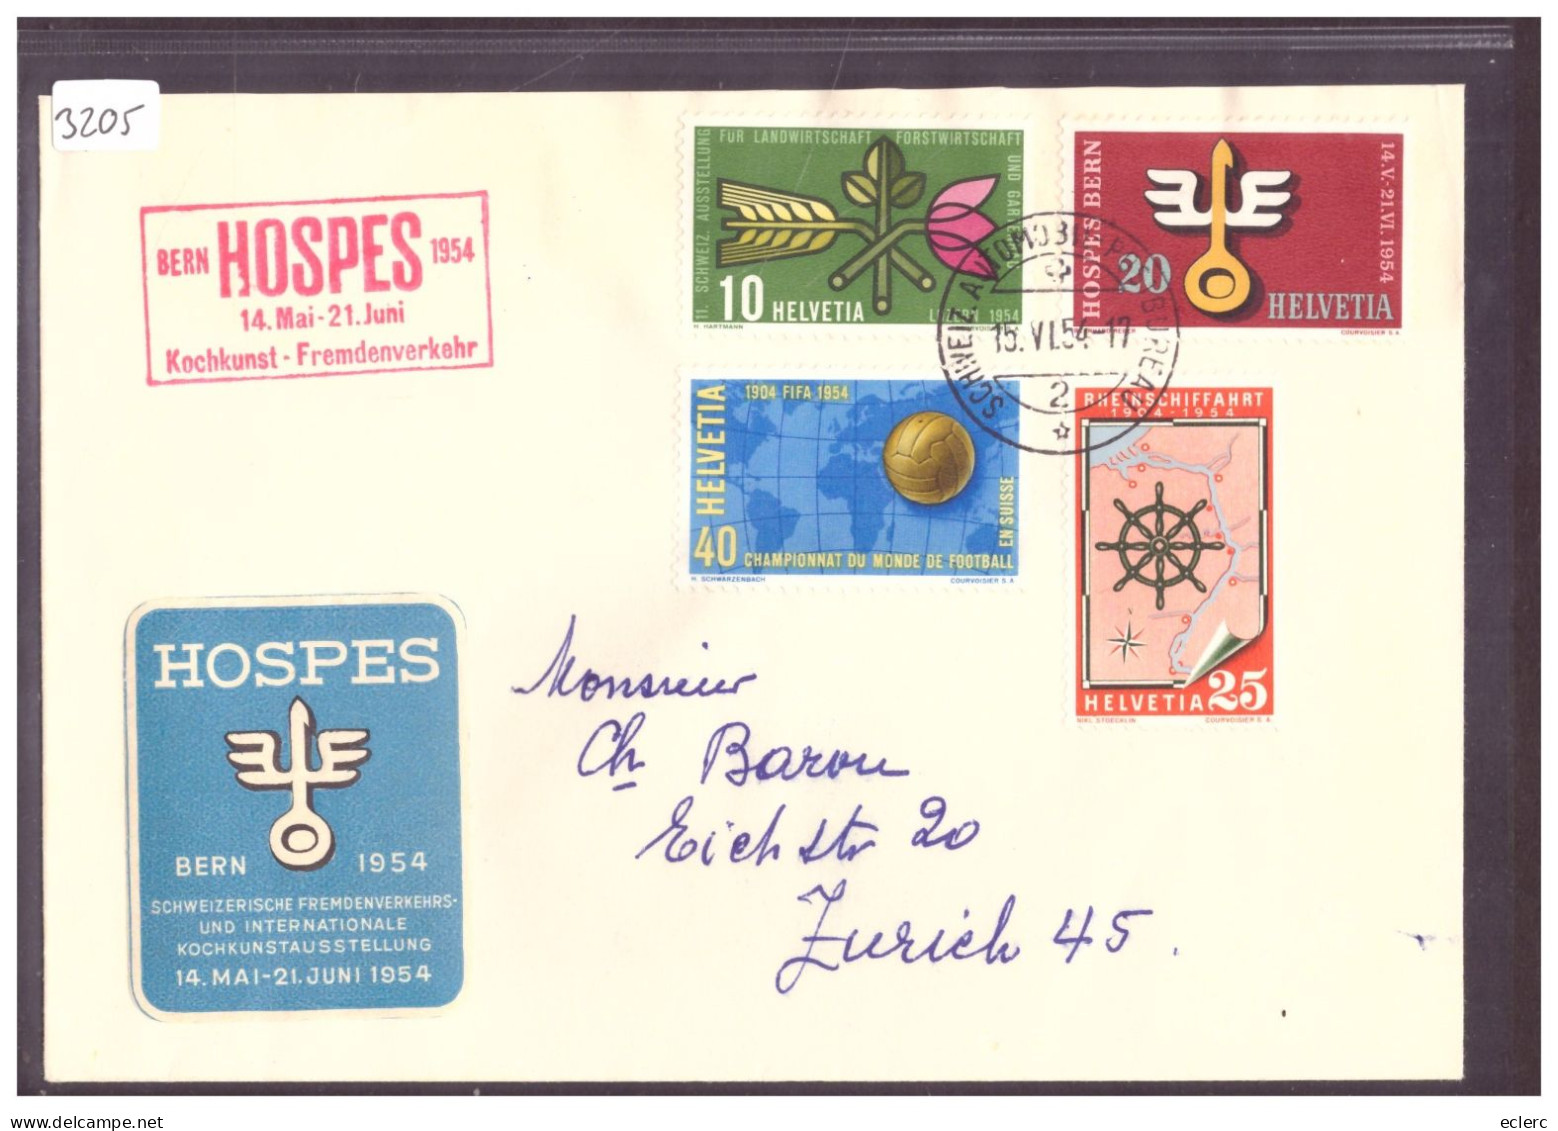 BERN HOSPES 1954 - SERIE TIMBRES AVEC VIGNETTE - Lettres & Documents